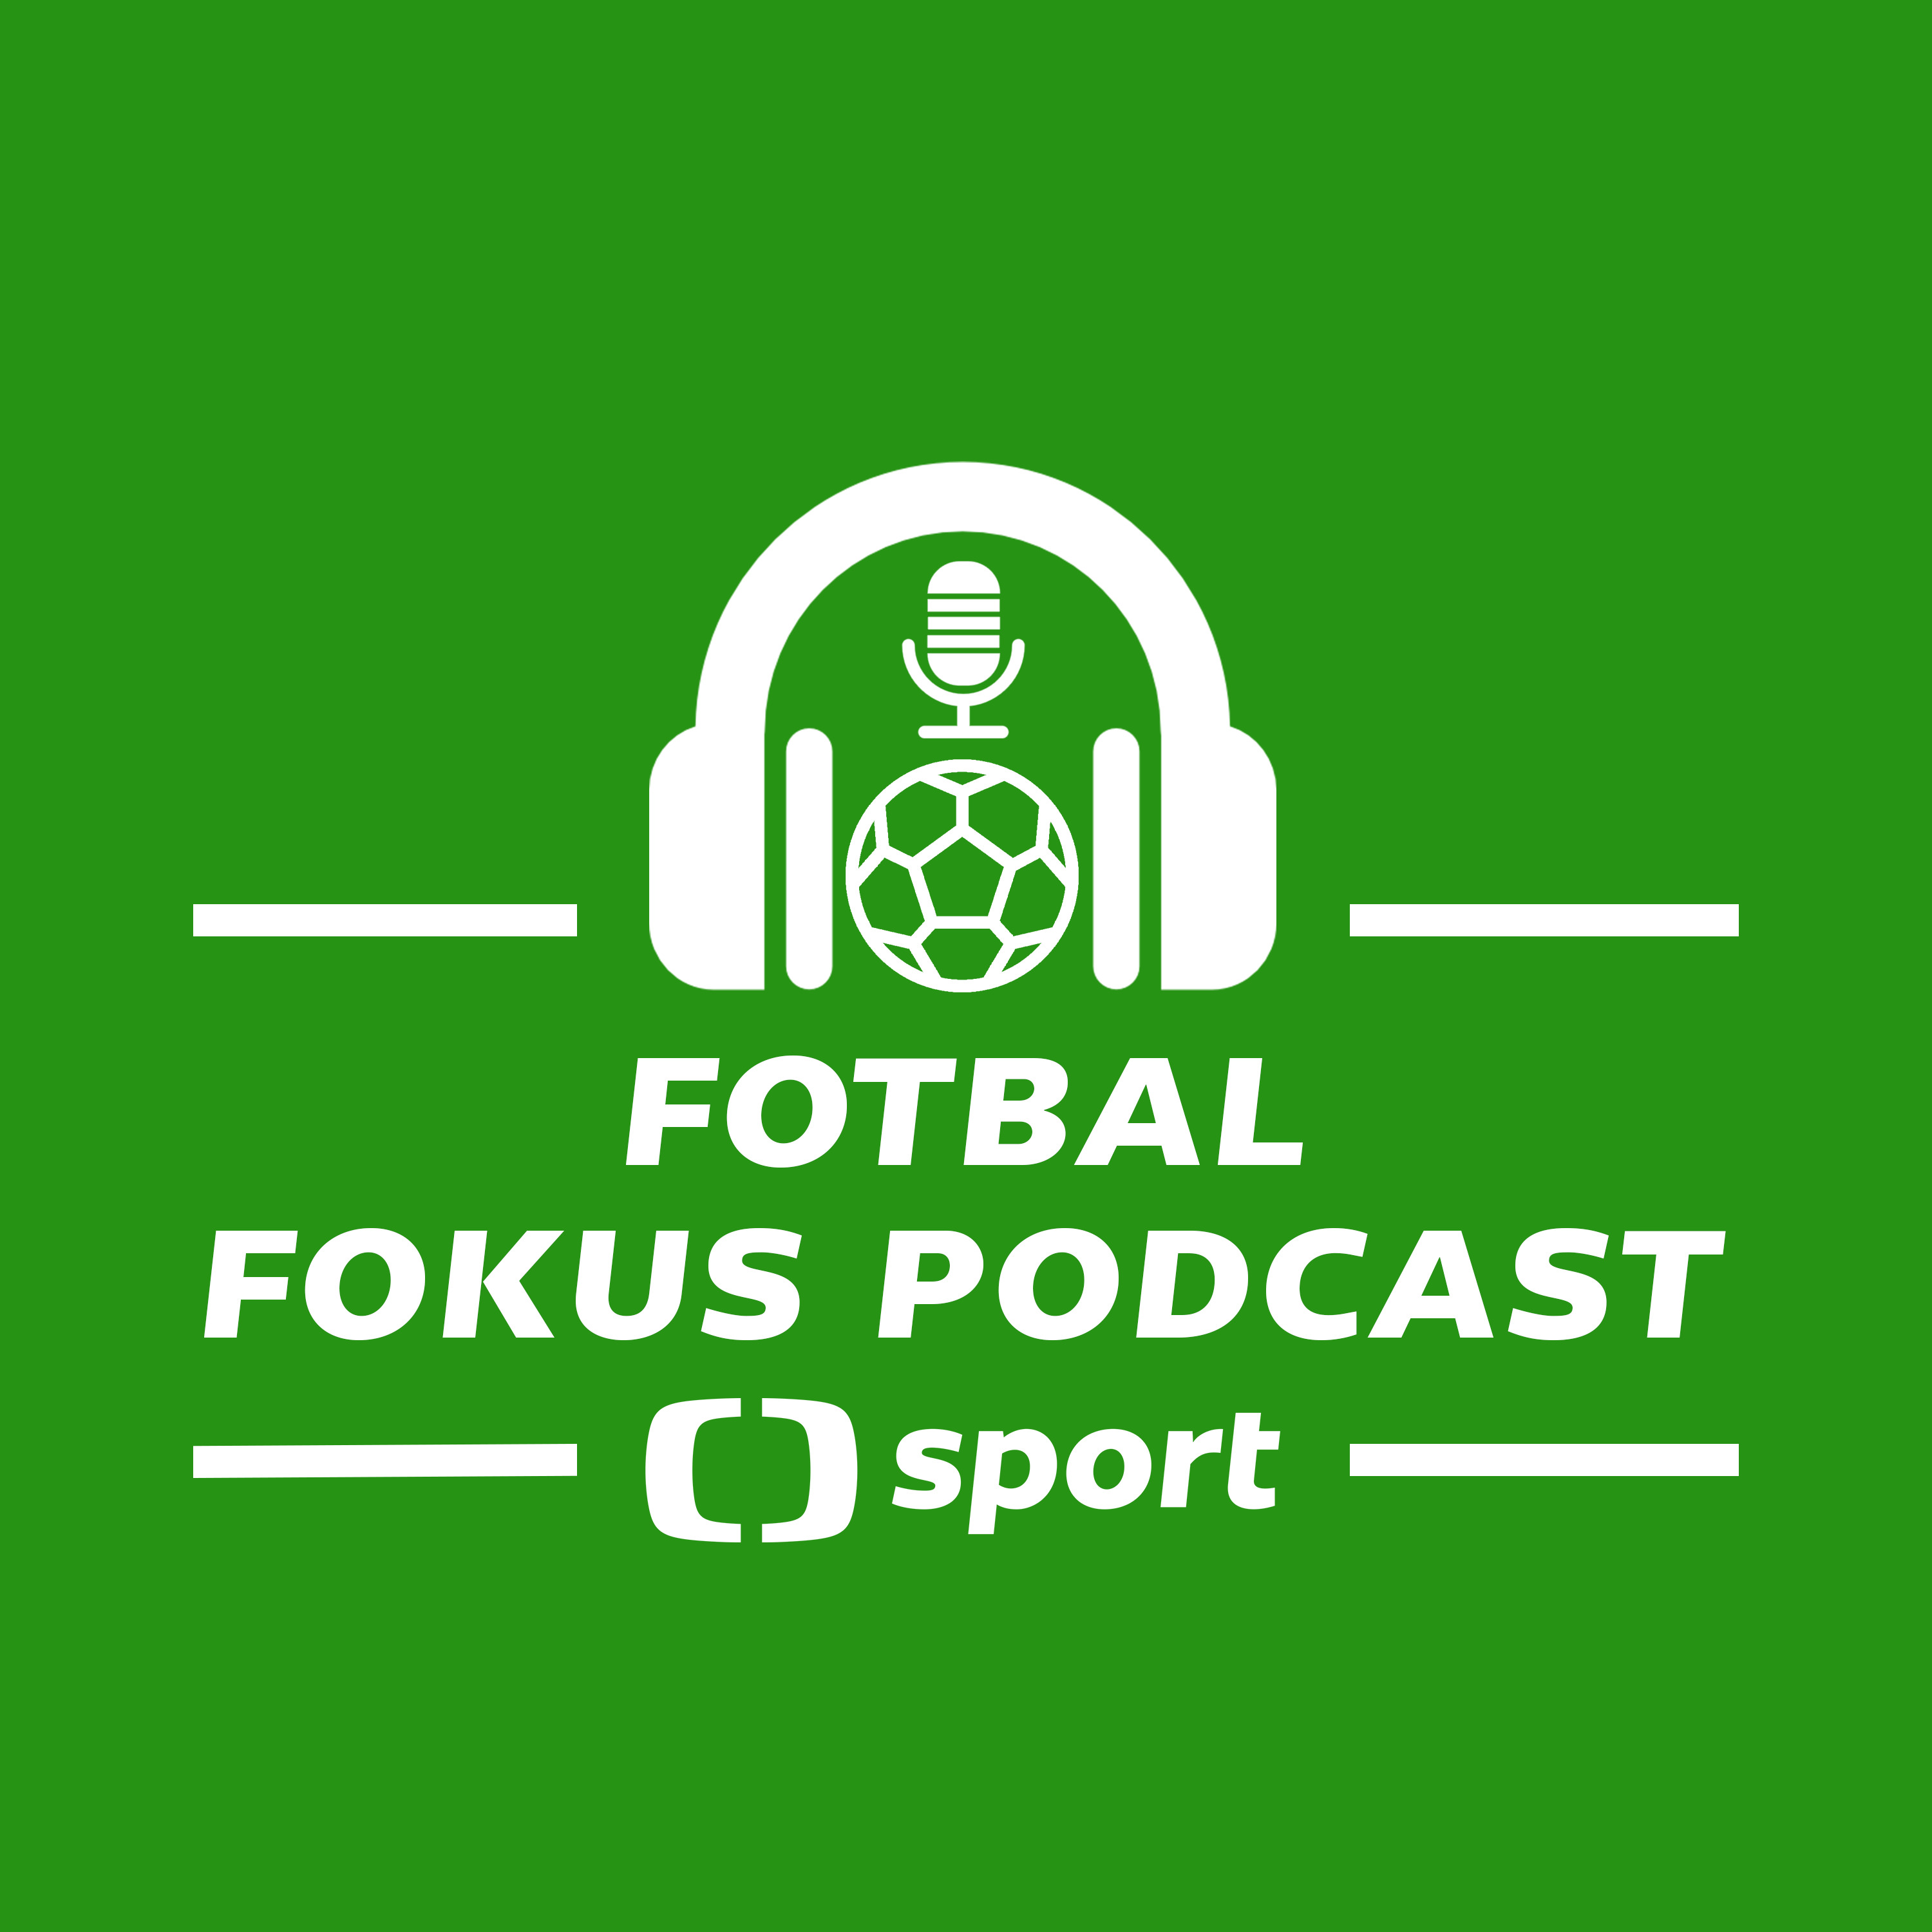 Fotbal fokus podcast: Čaroděj Jedlička, redka v Edenu, návrat Baráka a repre bez Belmonda